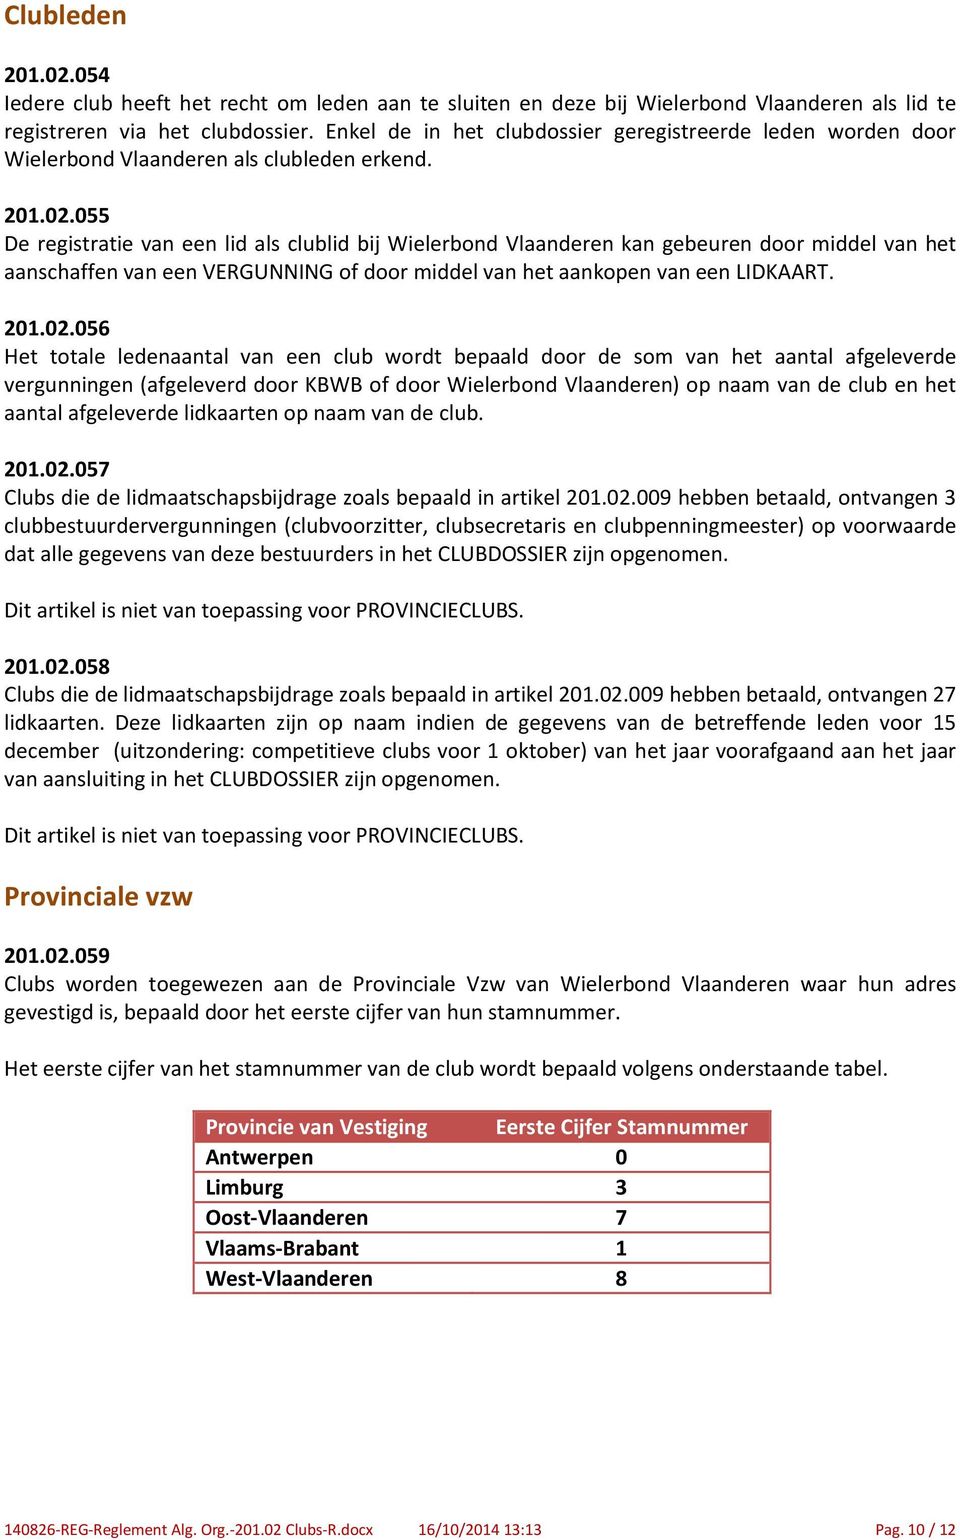 055 De registratie van een lid als clublid bij Wielerbond Vlaanderen kan gebeuren door middel van het aanschaffen van een VERGUNNING of door middel van het aankopen van een LIDKAART. 201.02.